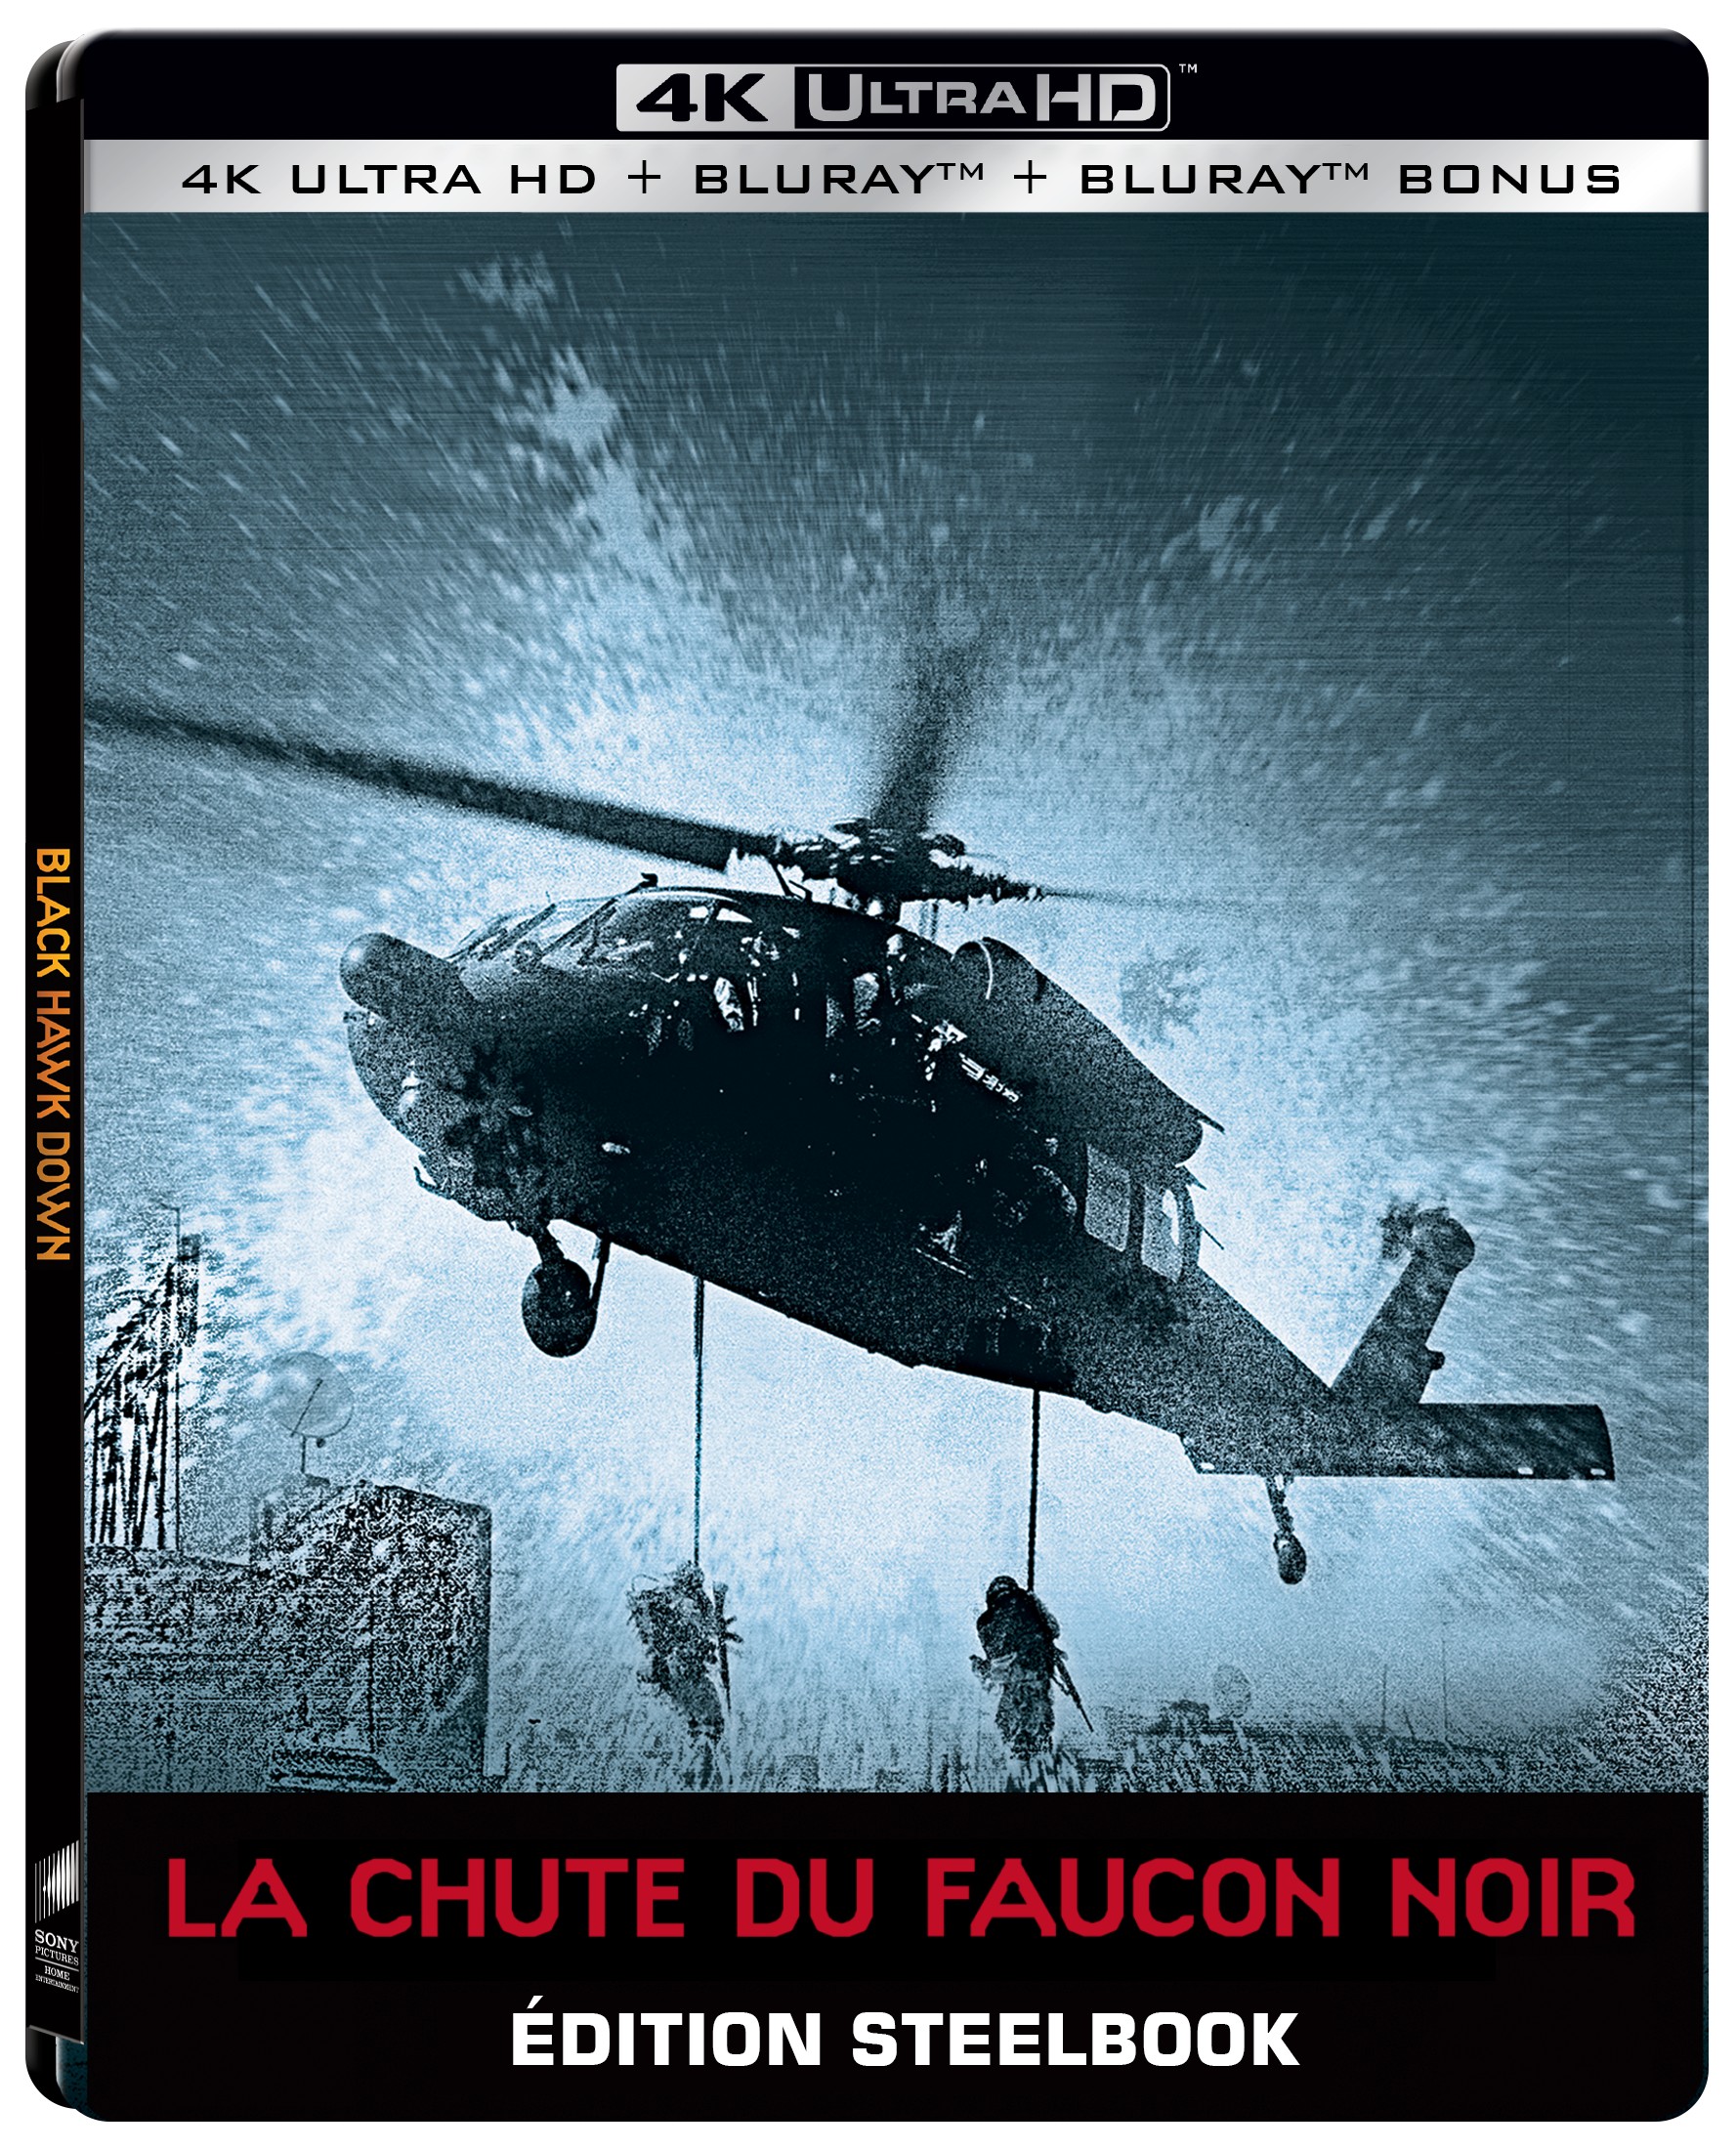 LA CHUTE DU FAUCON NOIR - COMBO UHD 4K + 2 BD - STEELBOOK EDITION LIMITEE